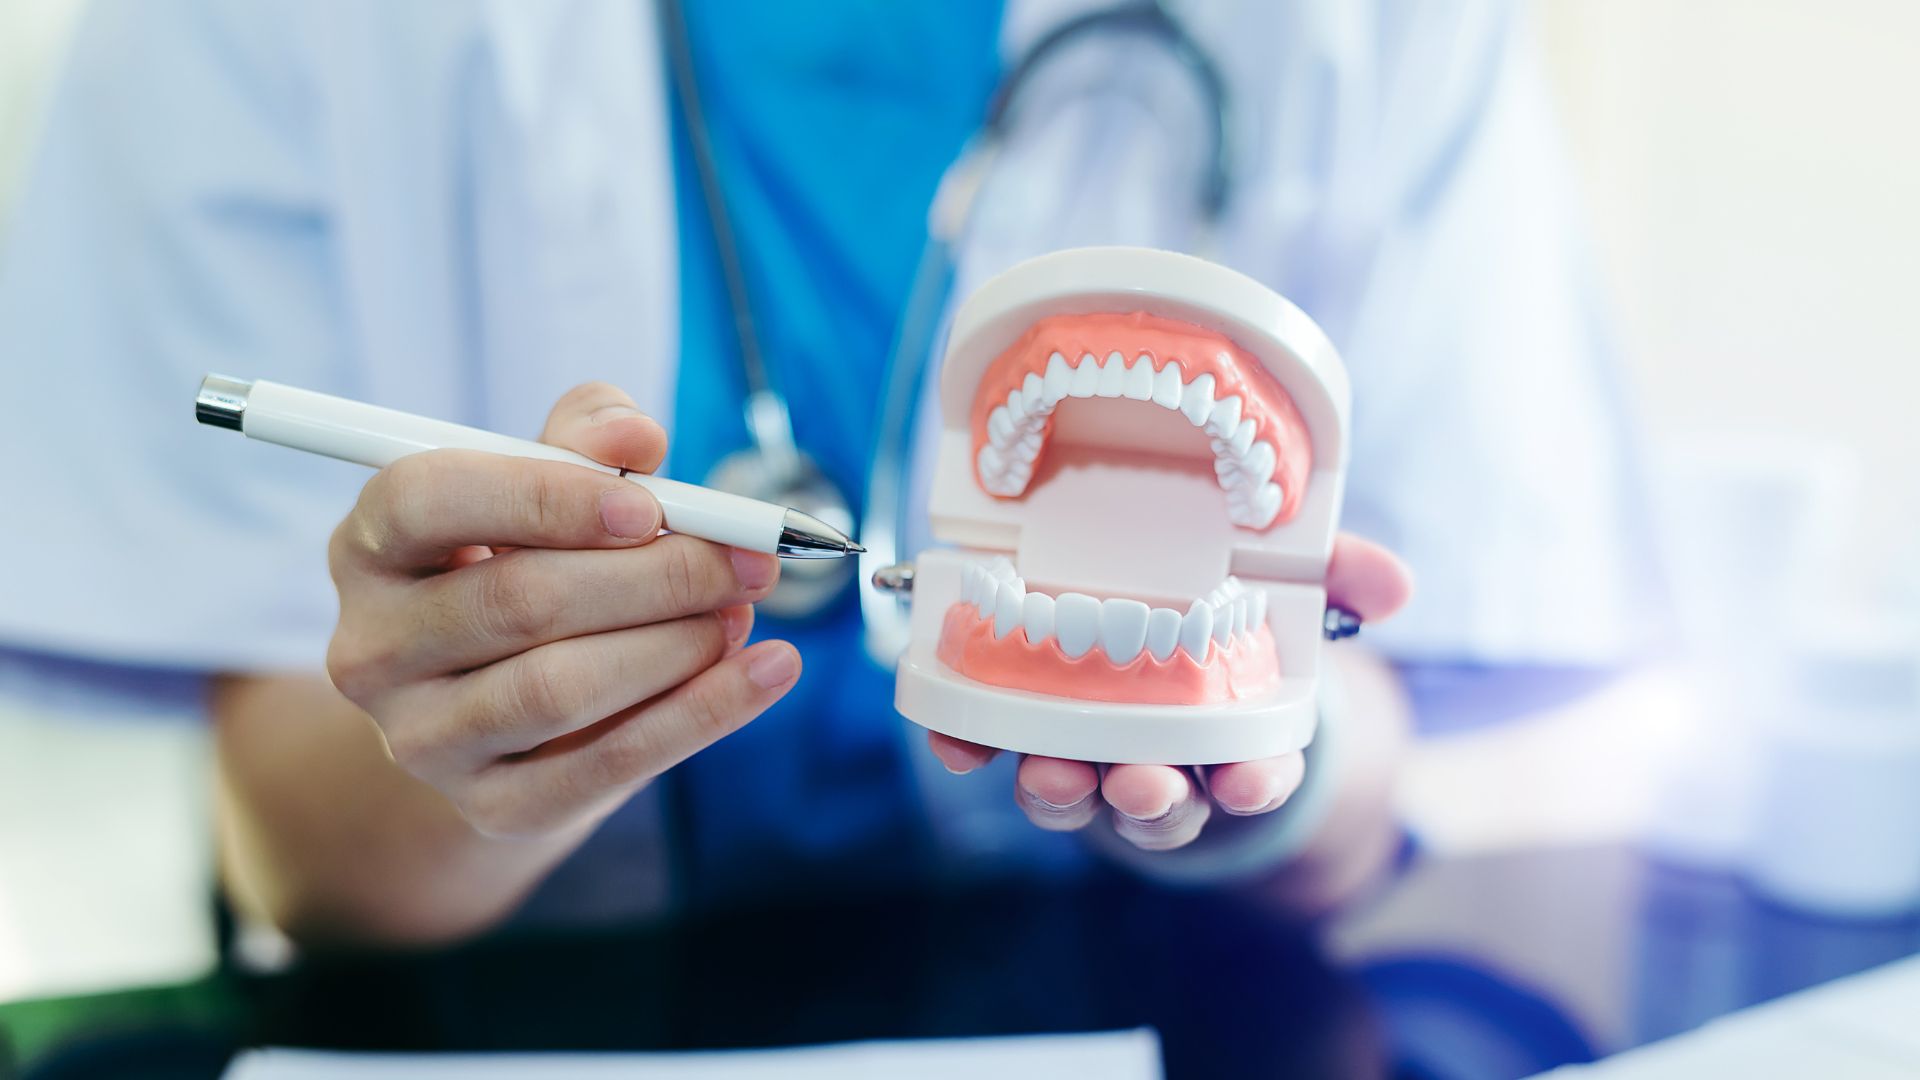 7 признаков того, что вы рискуете потерять зубы и что делать, чтобы этого избежать